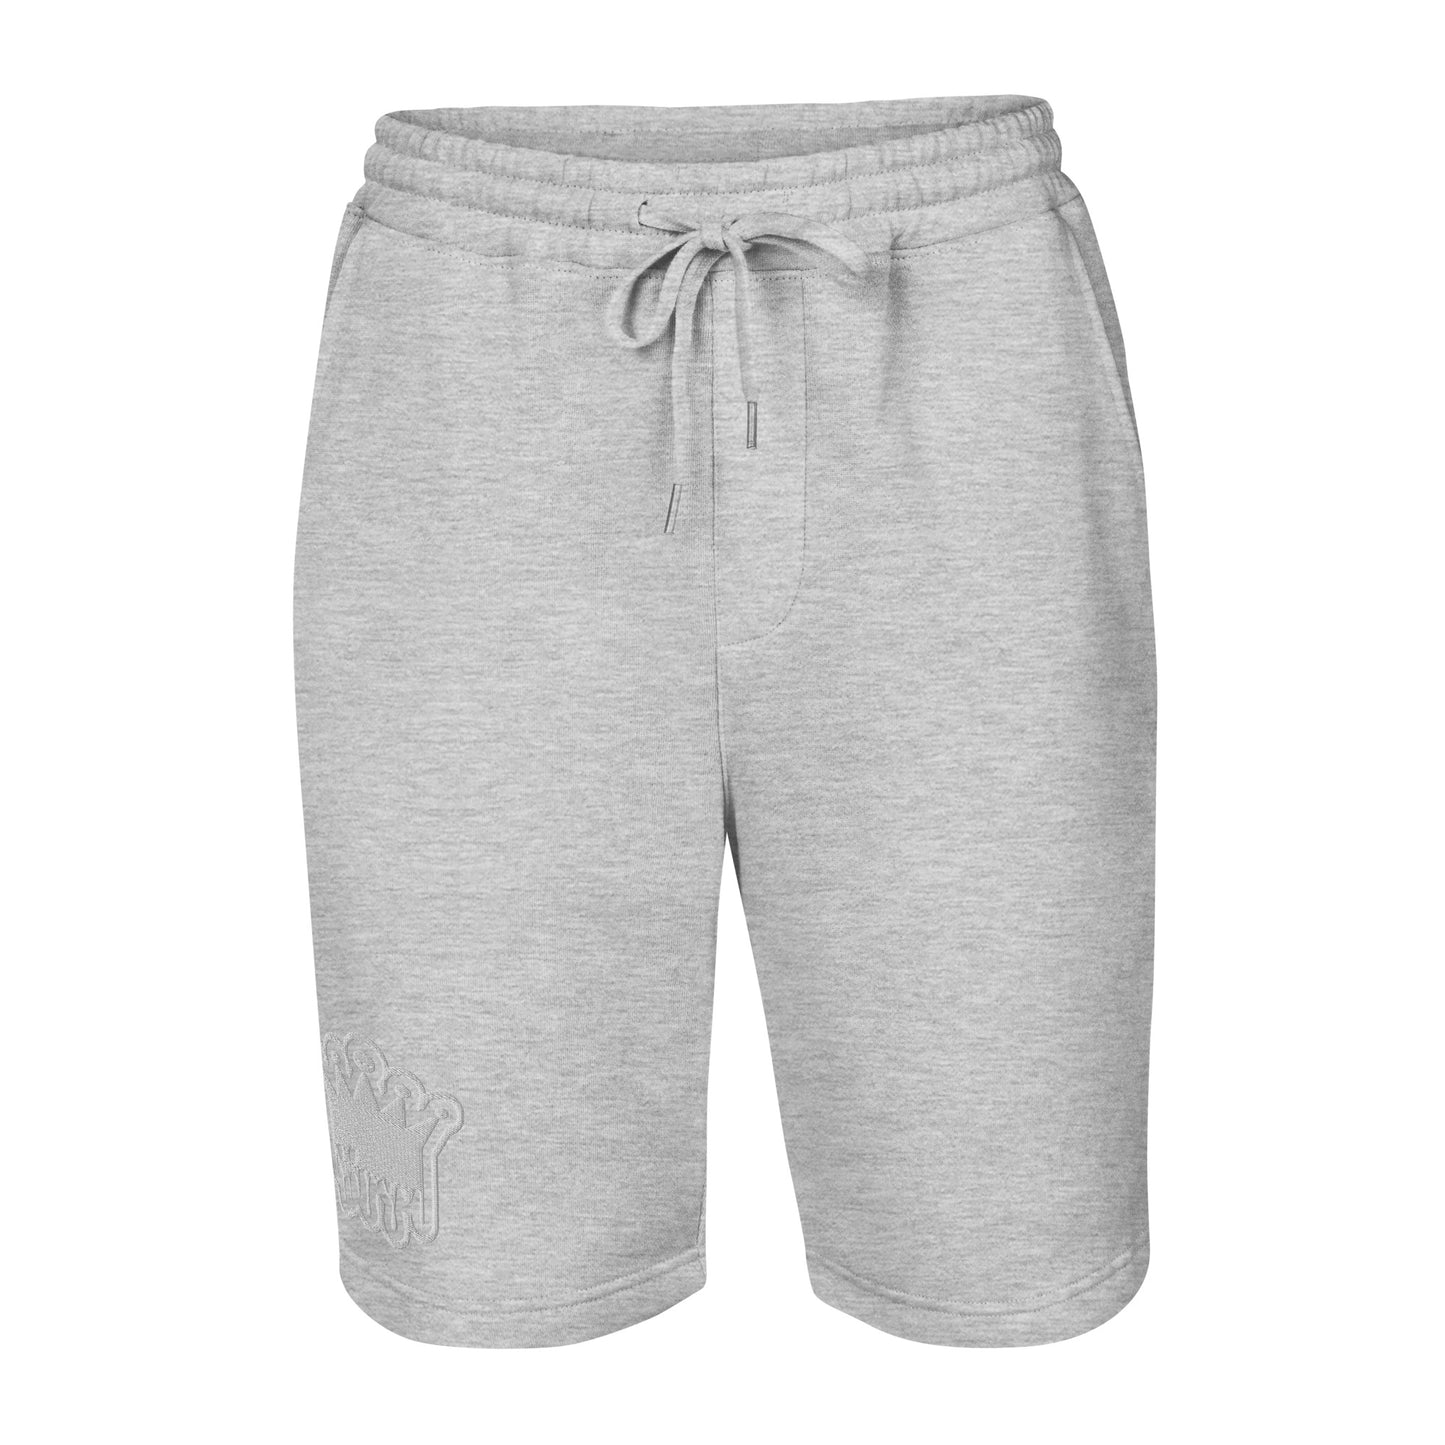 MC Men's fleece shorts